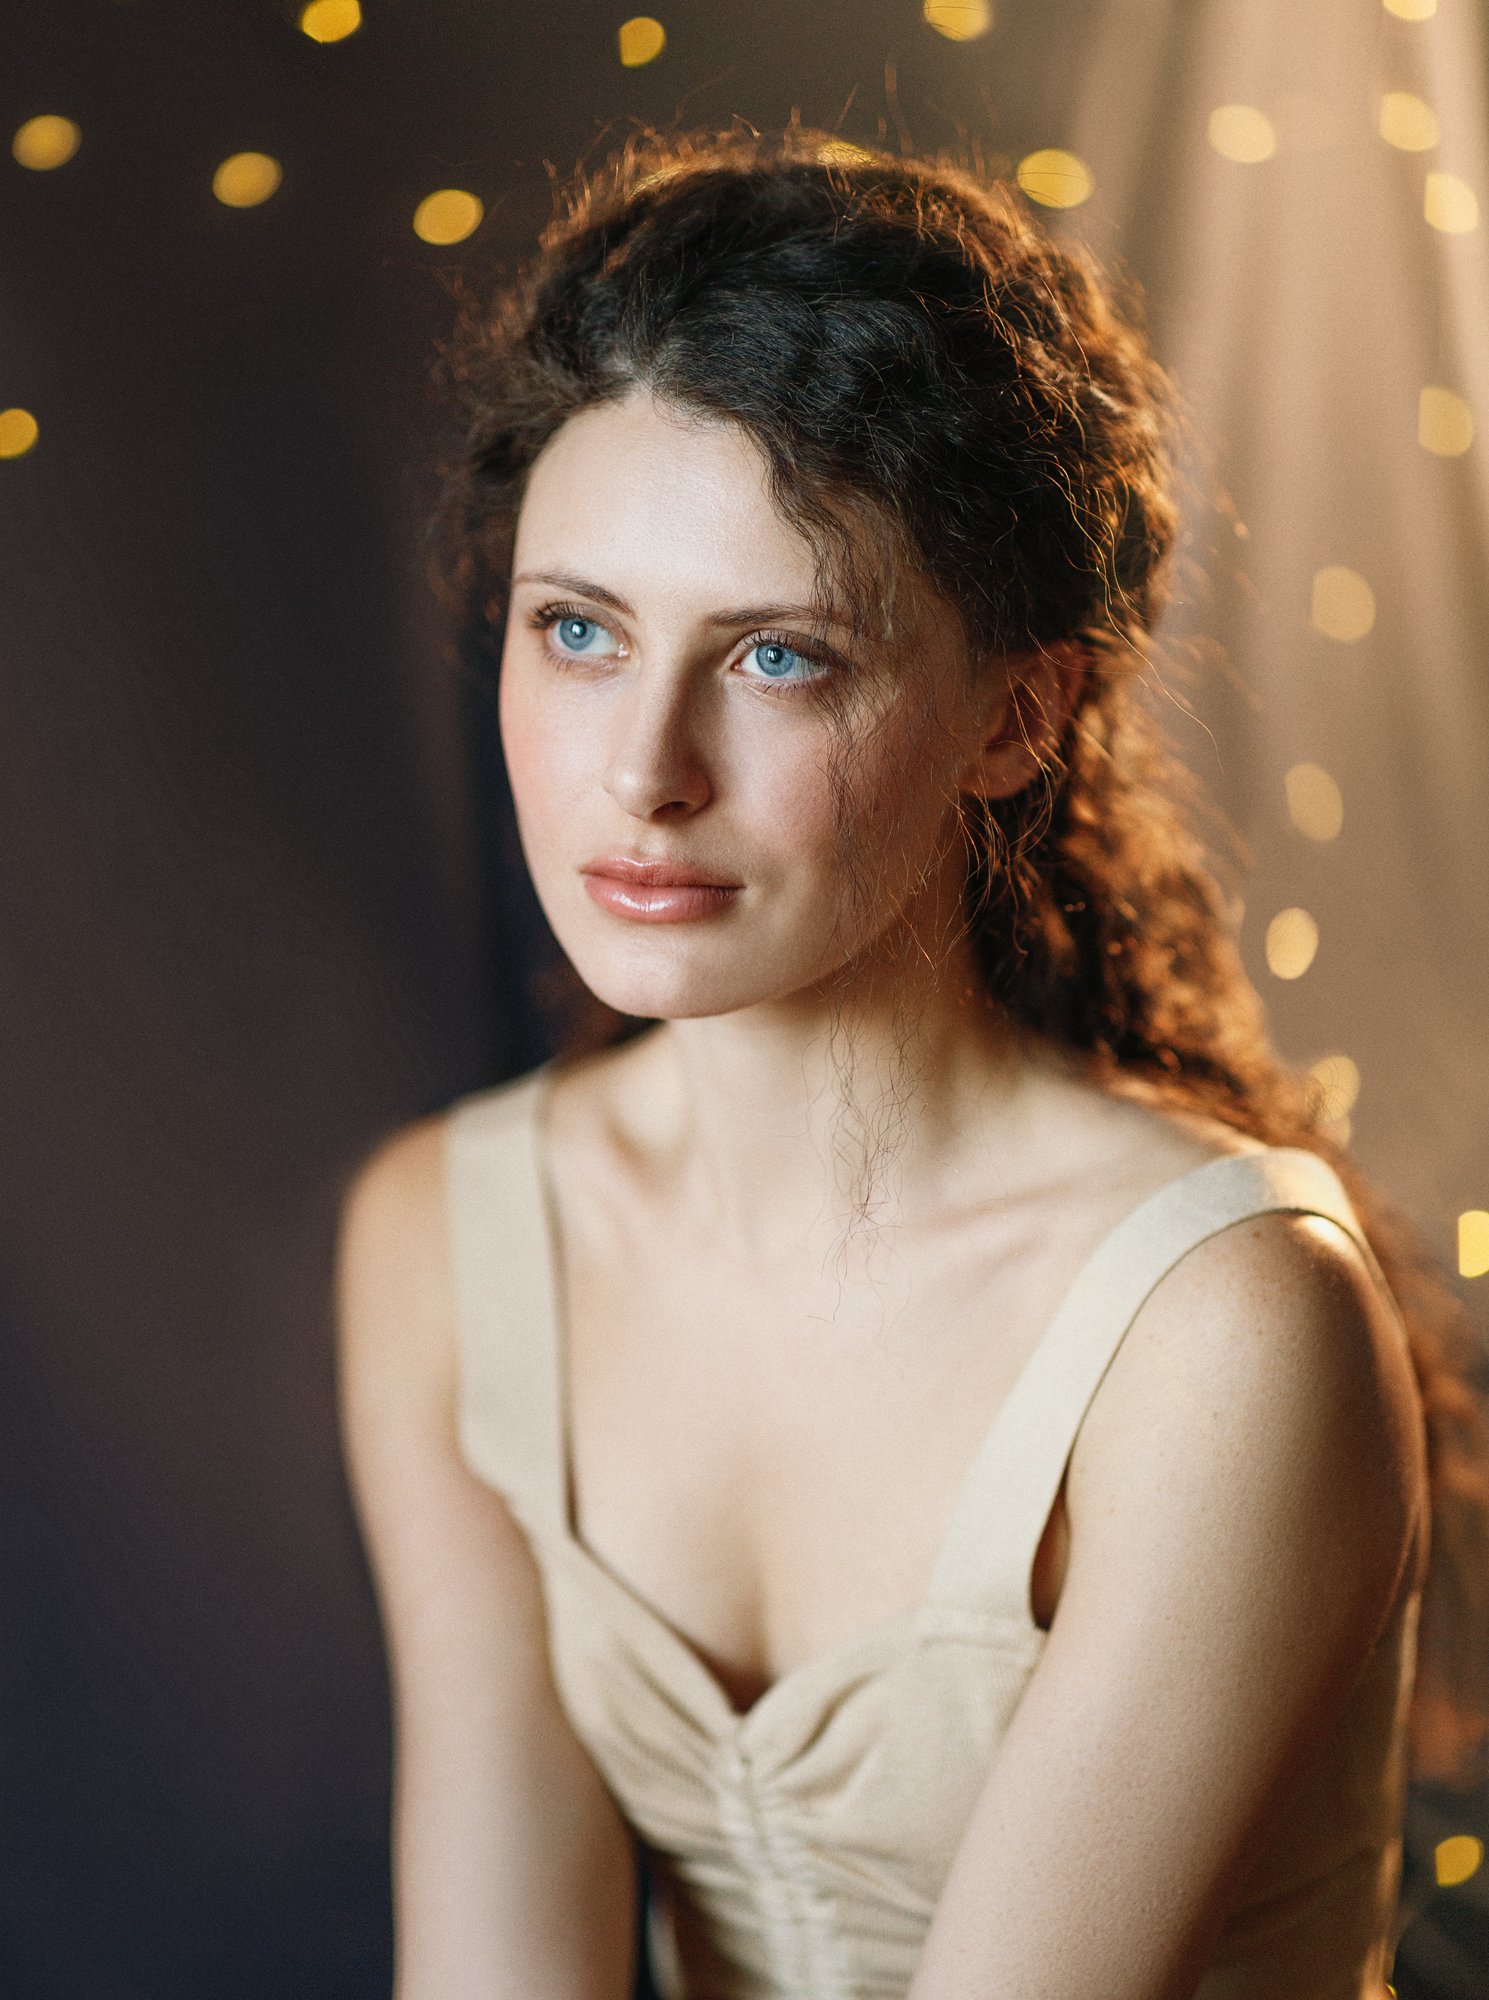 Нежная, девушка, новогодняя, голубые глаза, вьющиеся волосы, Оксана Ведмеденко